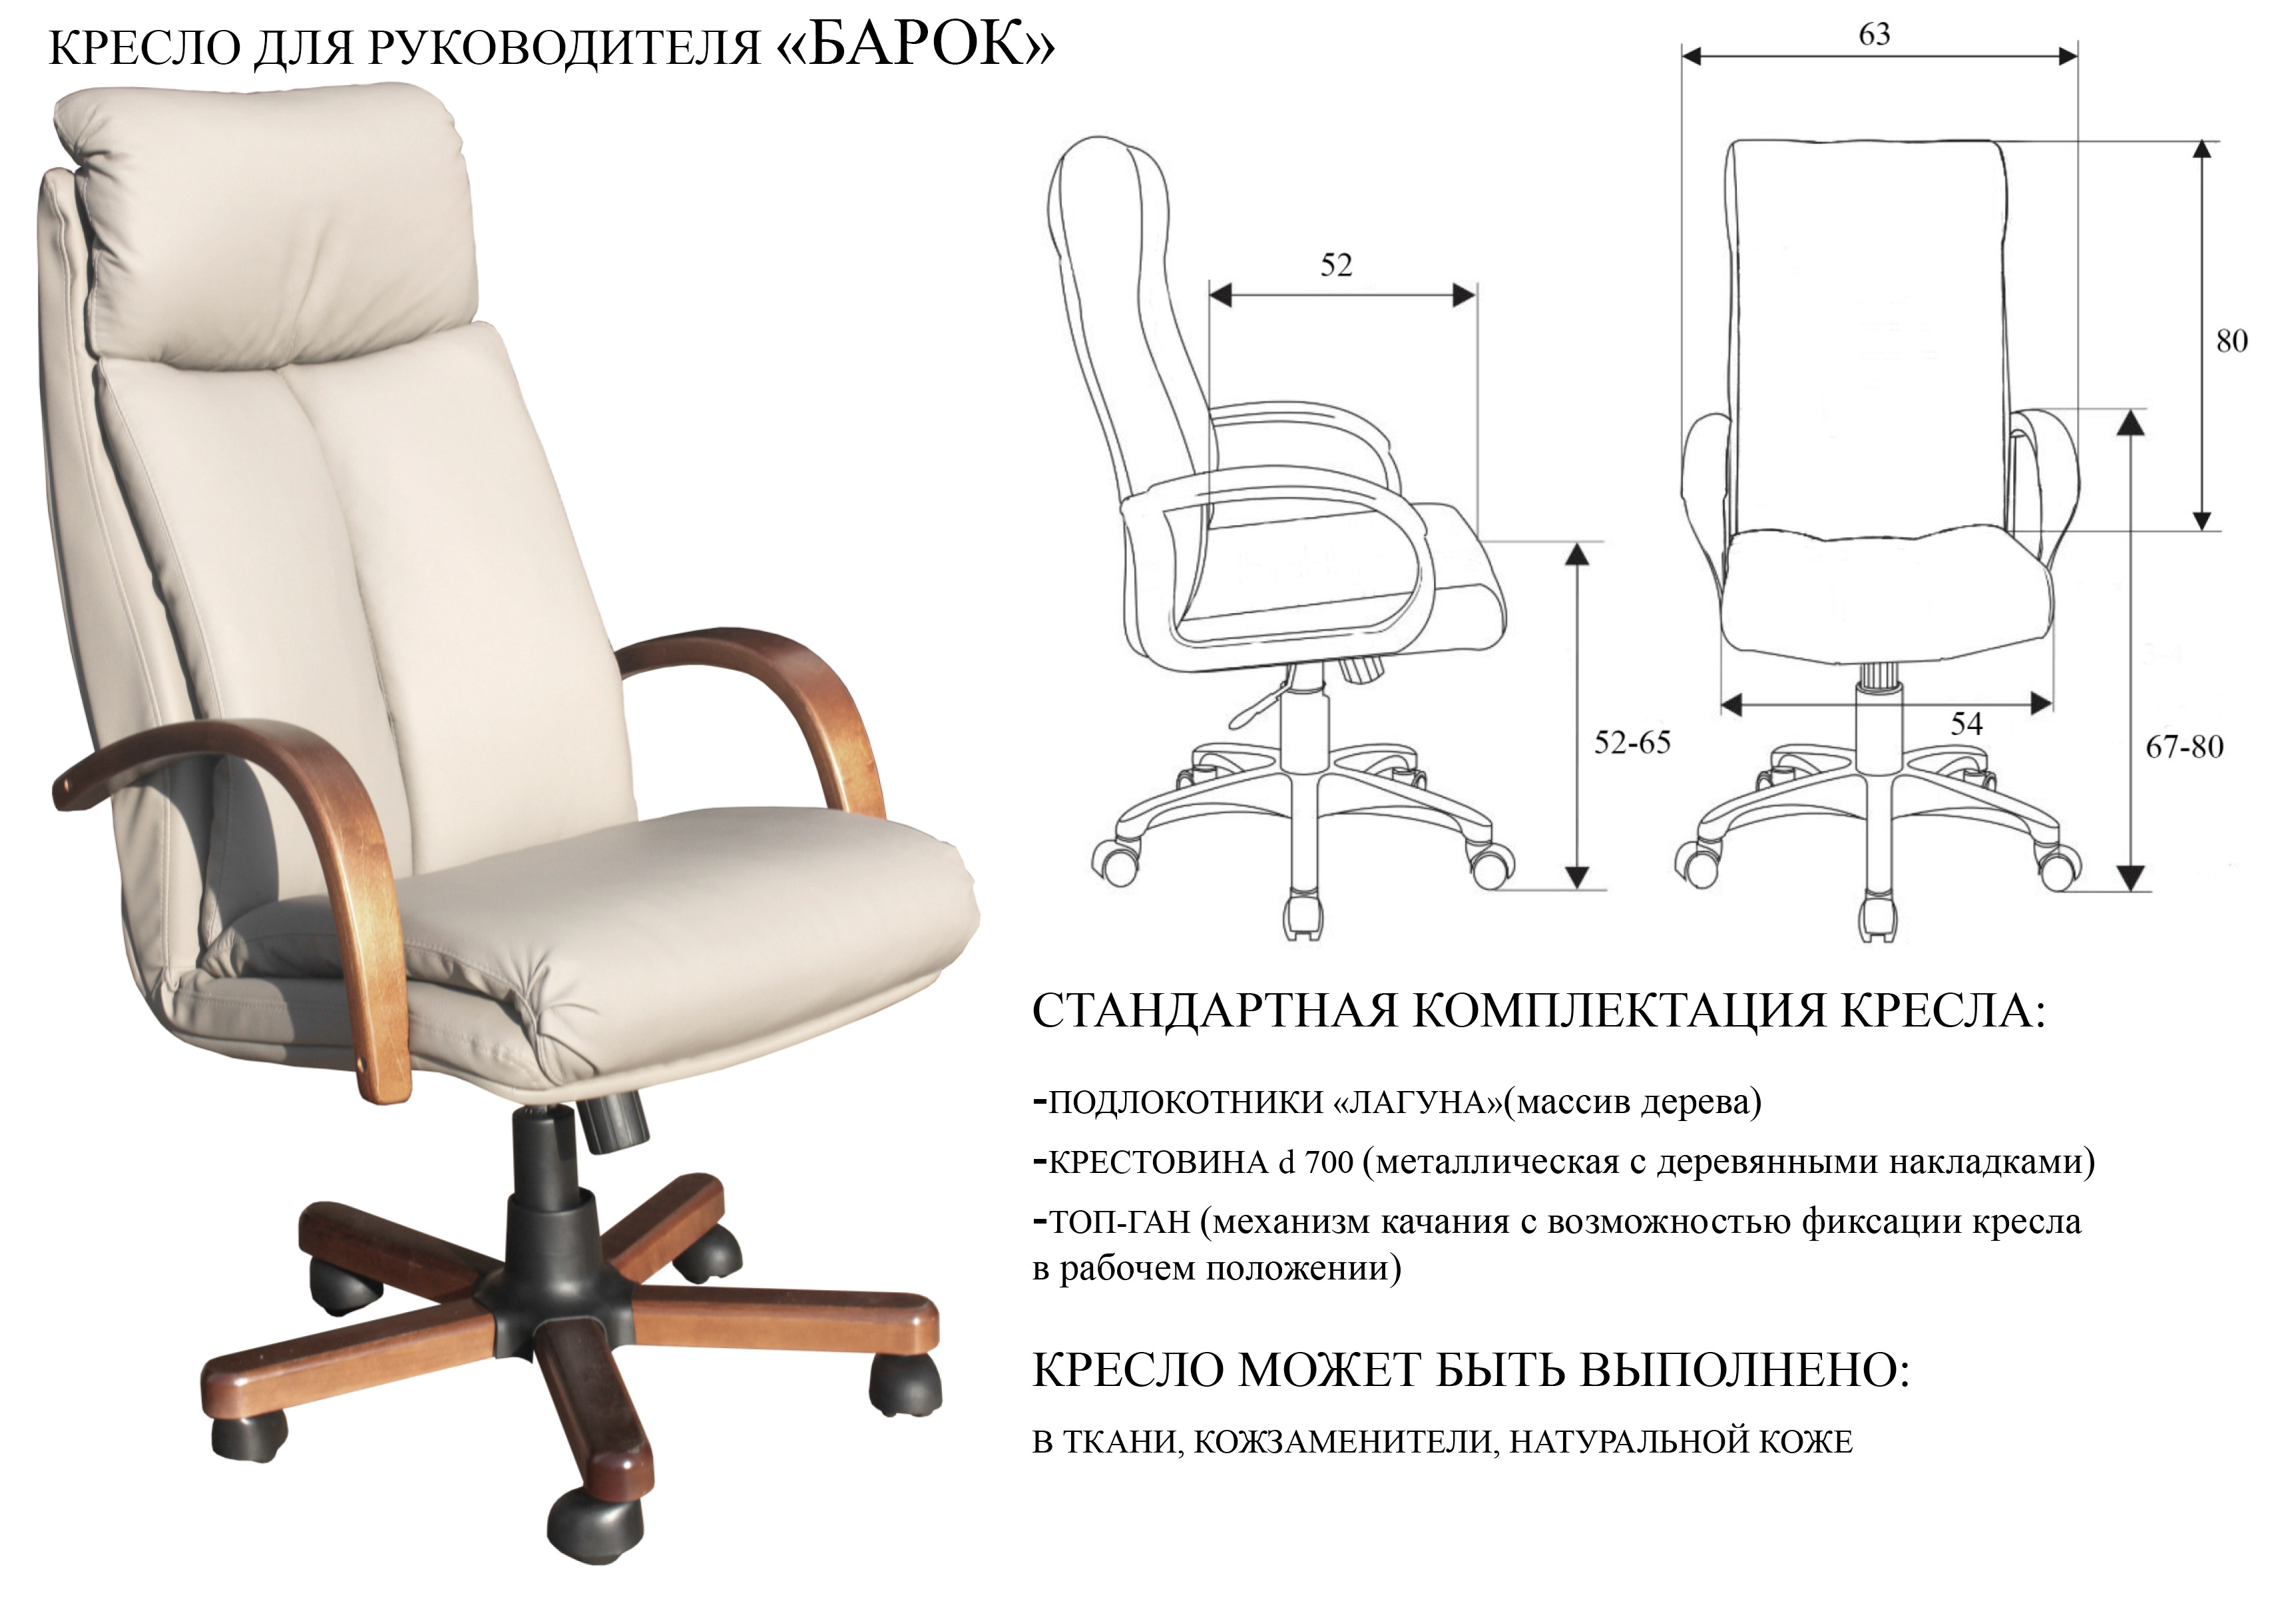 Схема кресла Барок с размерами